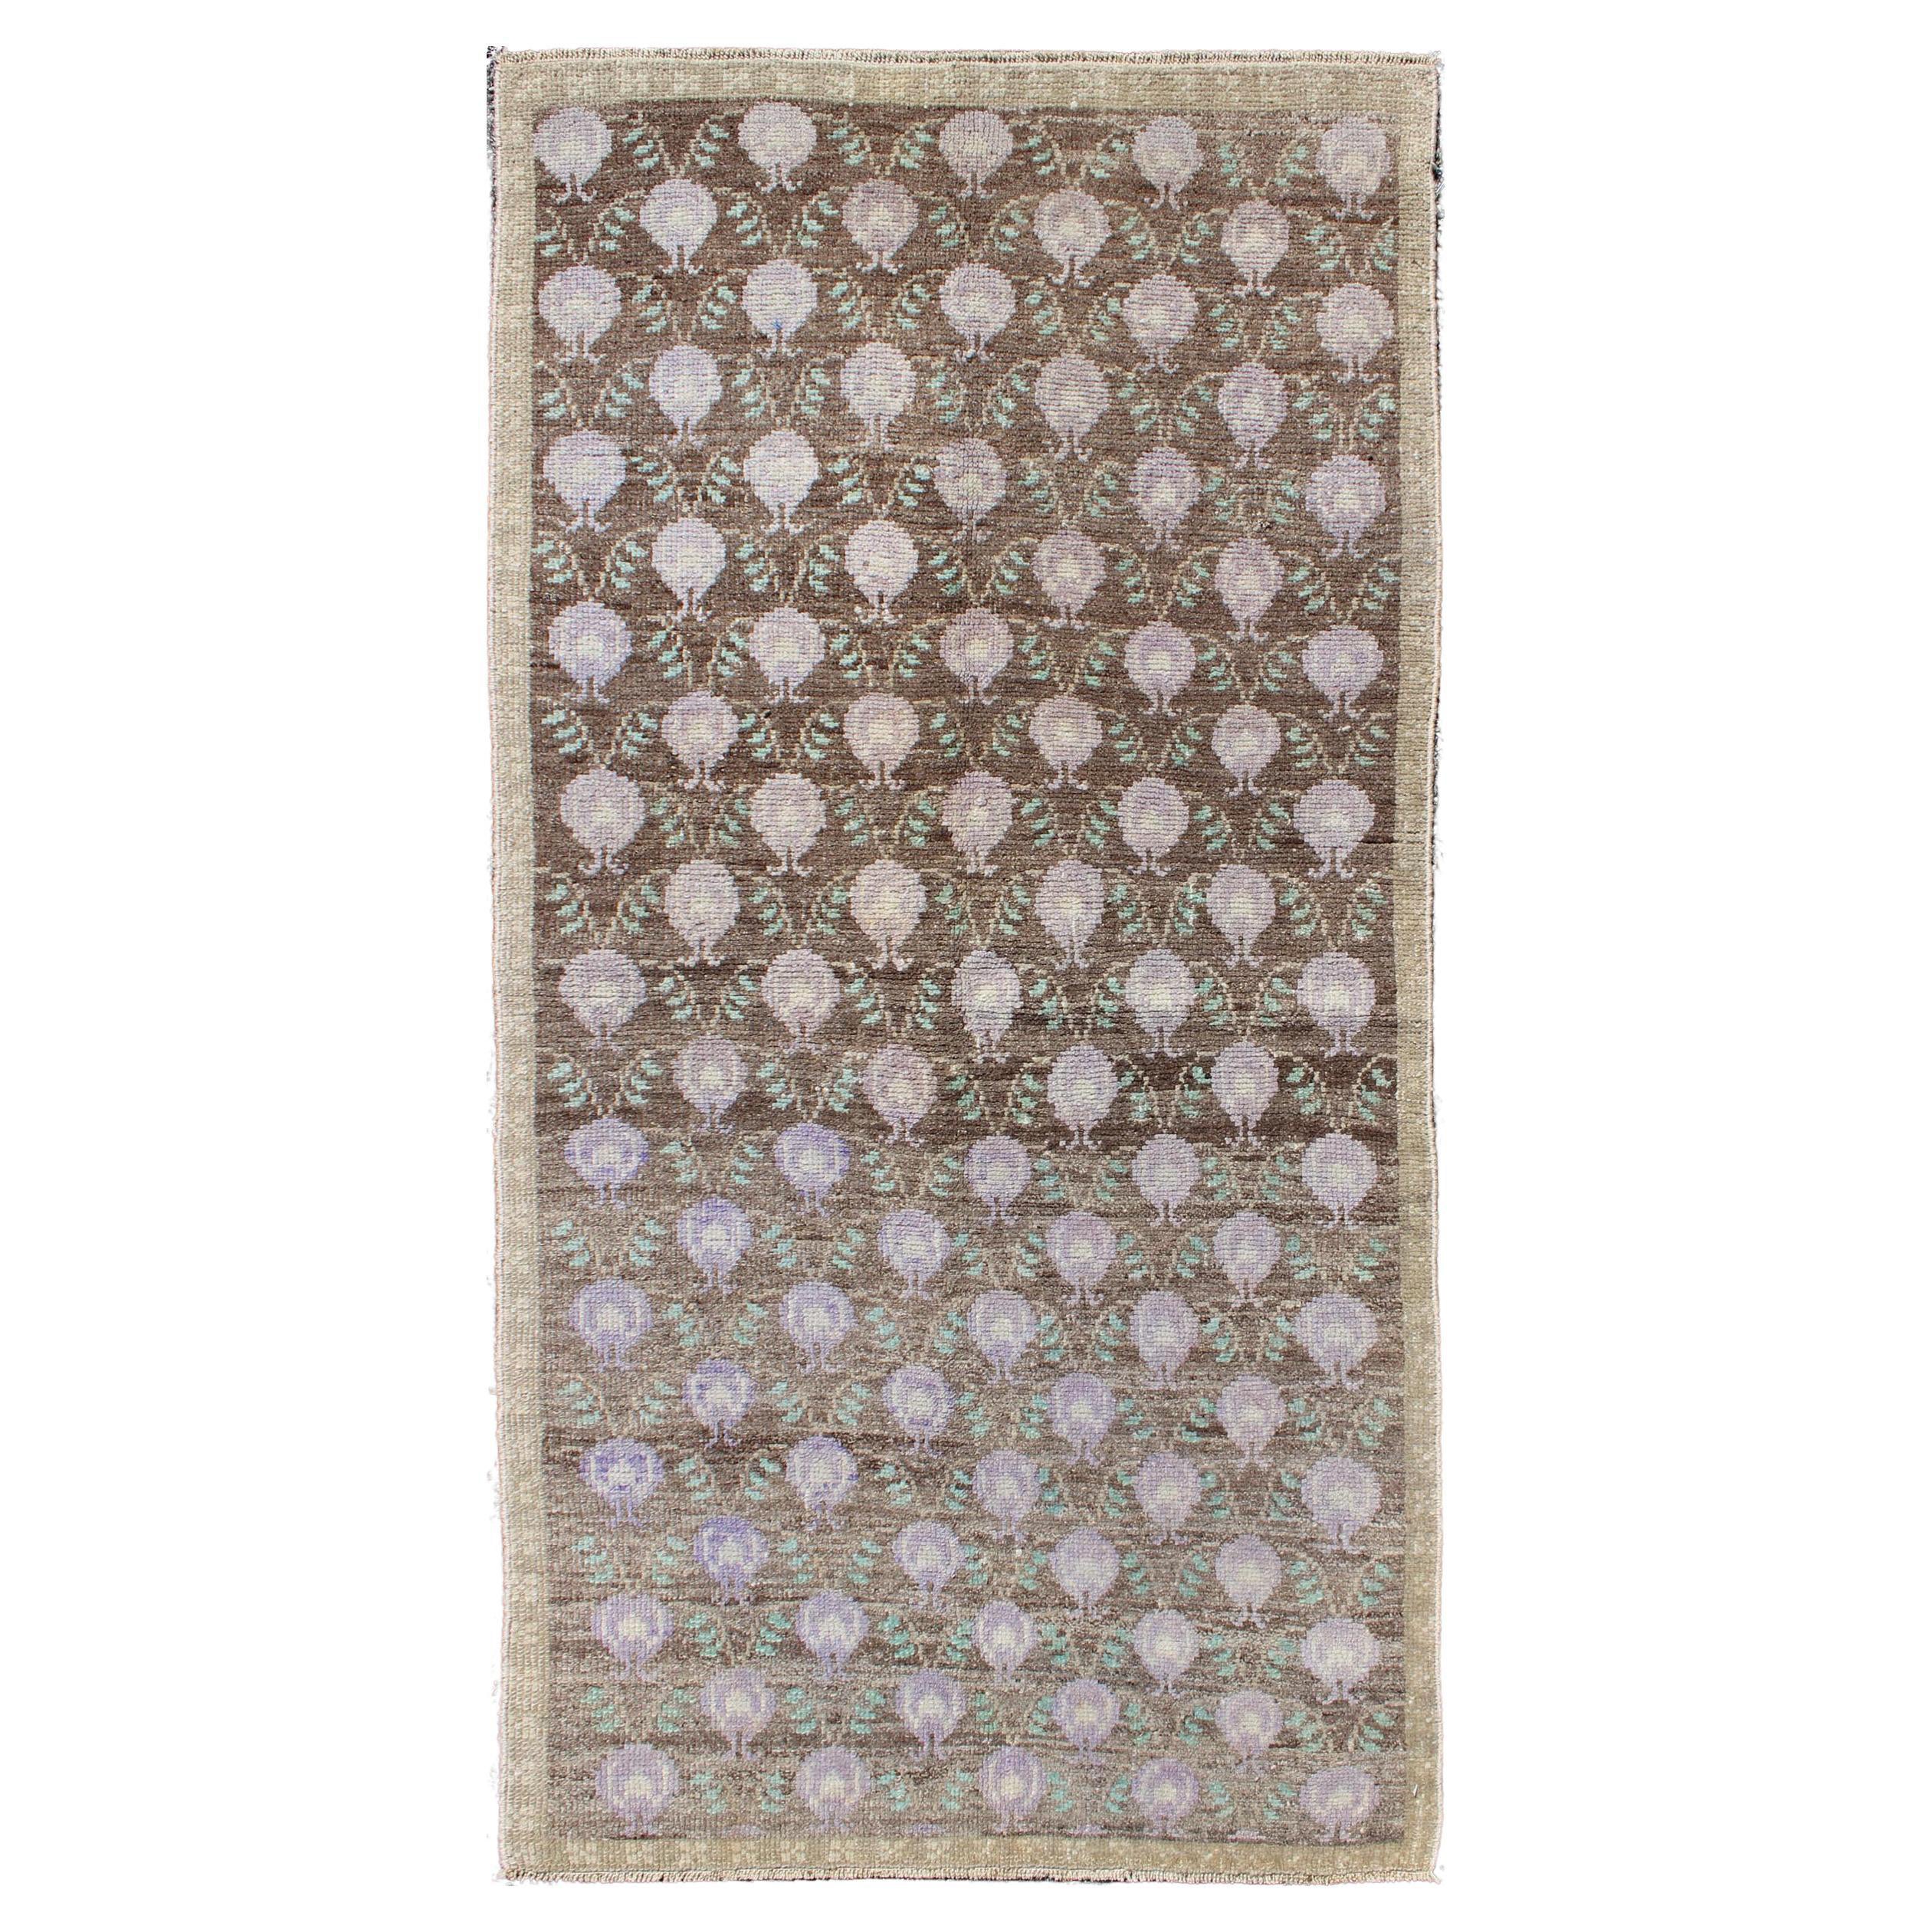 Türkischer Tulu-Vintage-Teppich in Braun, Grün und Lavendel mit Gitterwerk